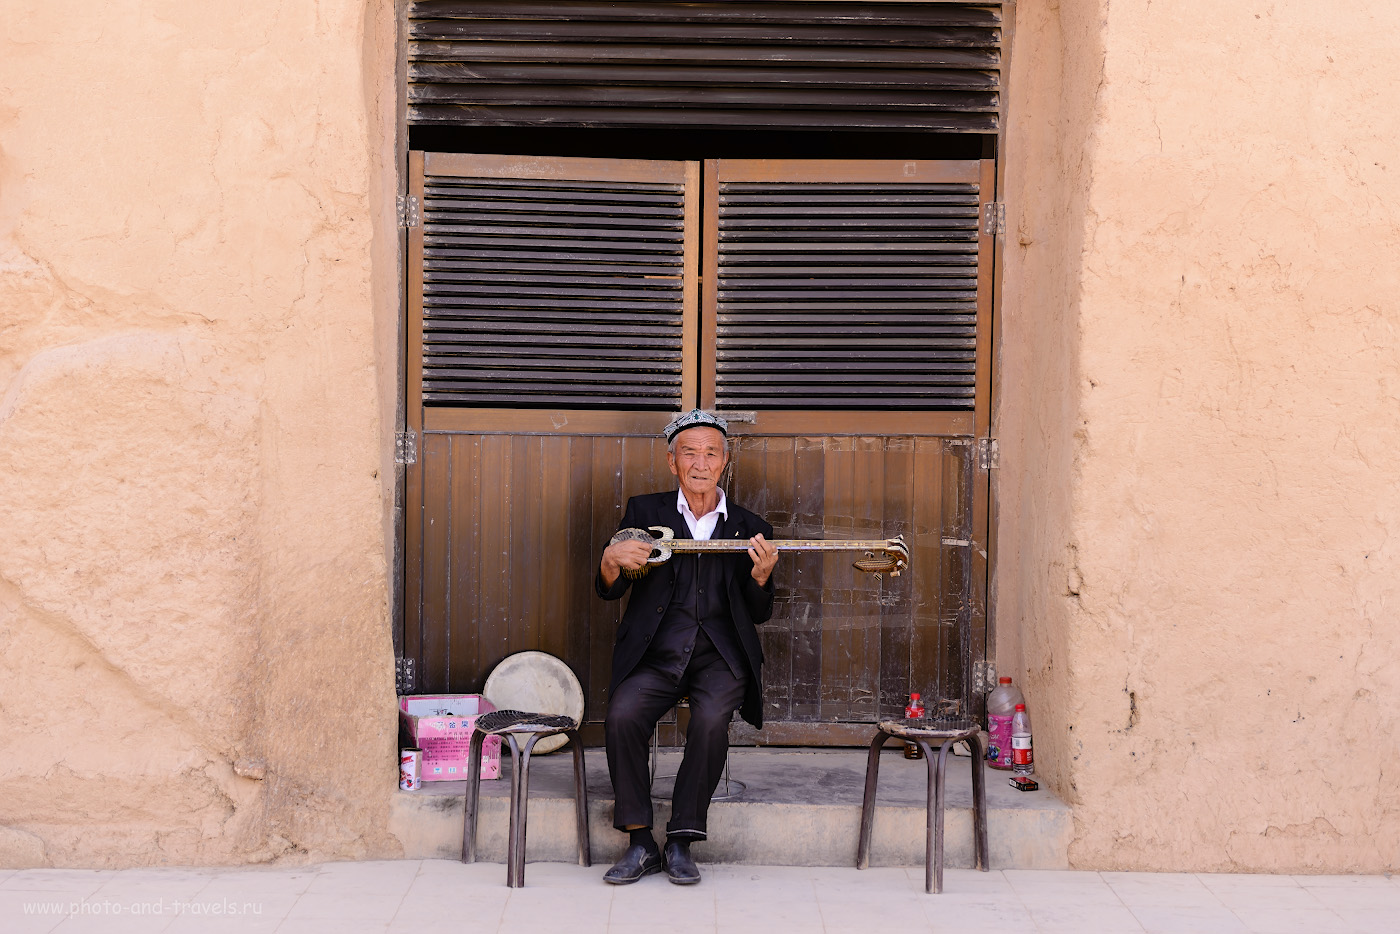 Фотография 17. Народный уйгурский музыкант, услаждающий слух туристов, наведавшихся в Безеклик. 1/250, 0.67, 2.8, 100, 58.